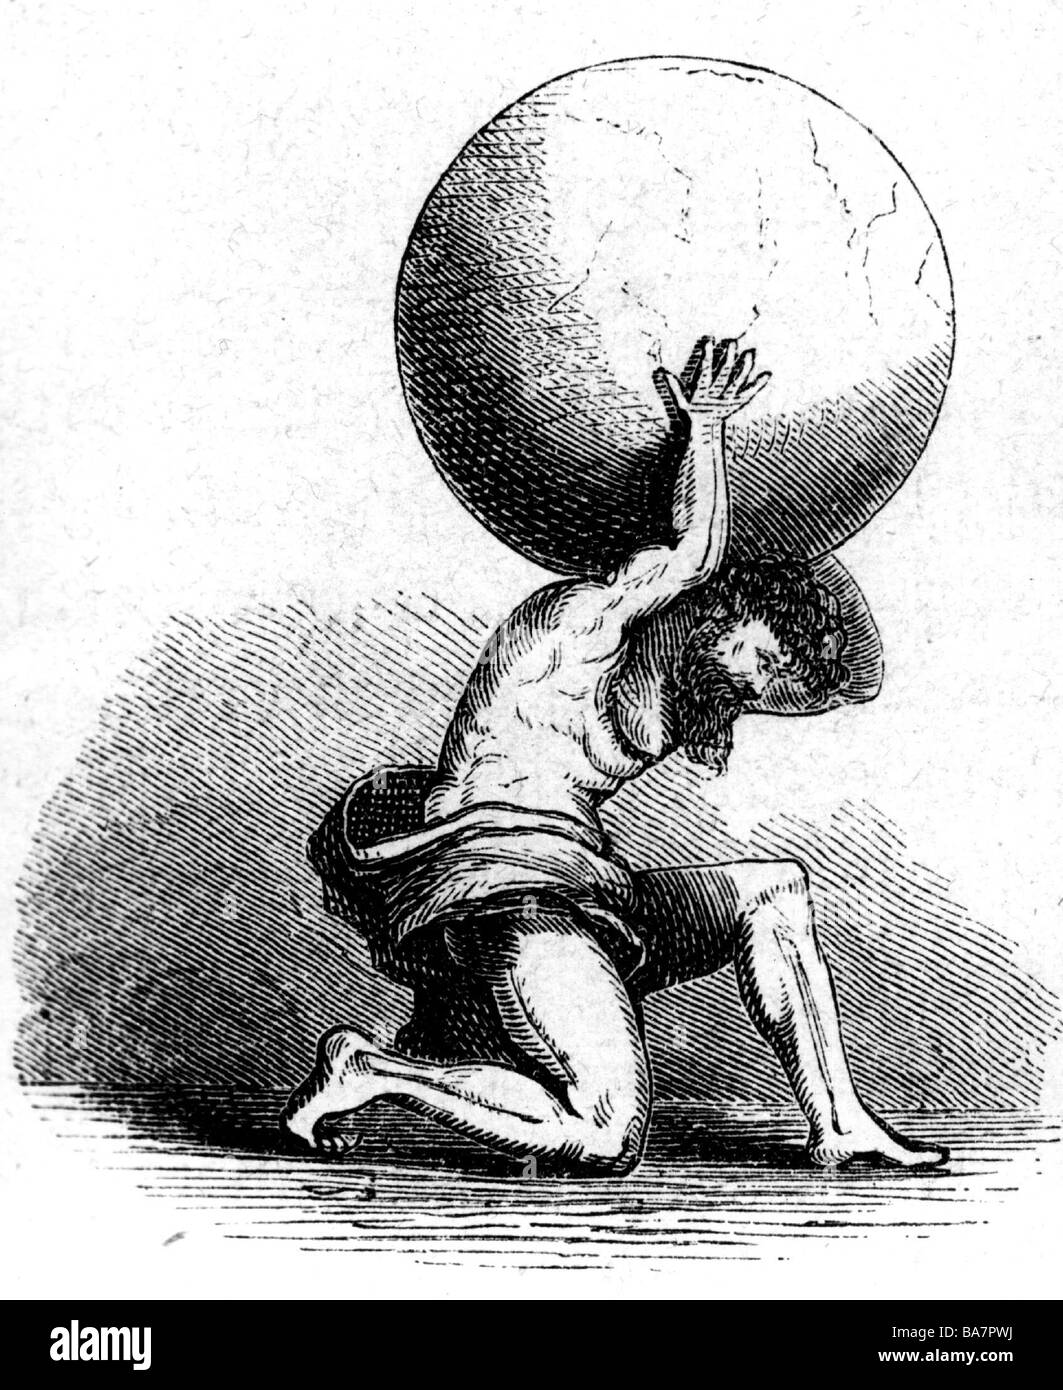 Atlas, Titán, figura de mito griego, llevando tierra sobre sus hombros, grabado de madera, siglo 19, Foto de stock